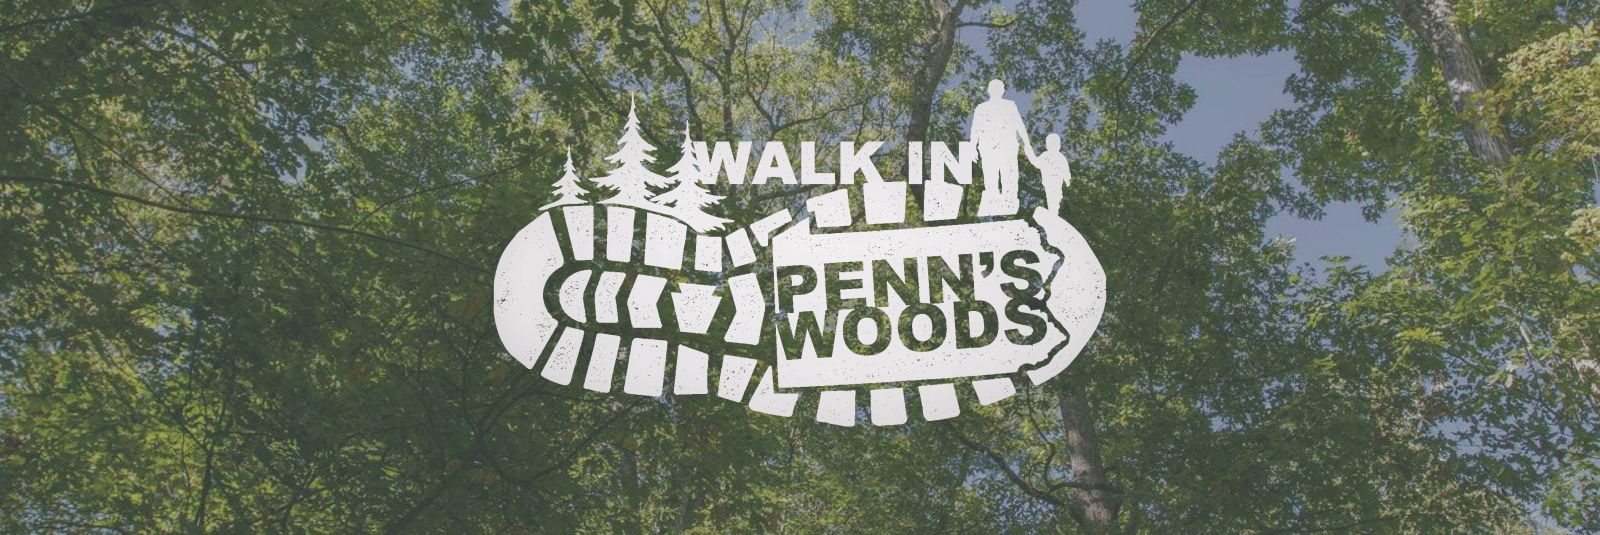 Walk In Peennswoods Header